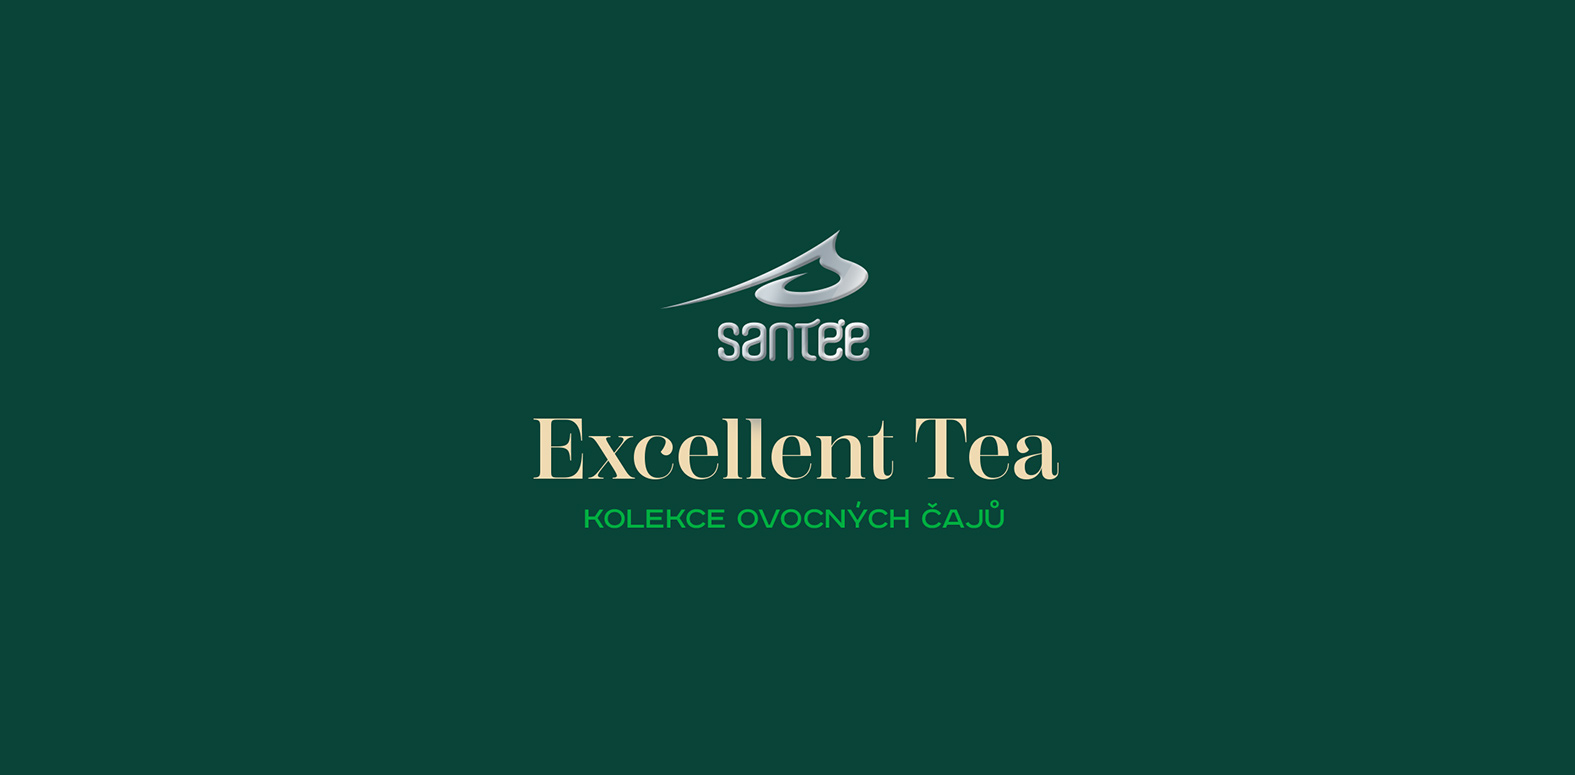 Logo Santée Excellent Tea, kolekce ovvocných čajů.